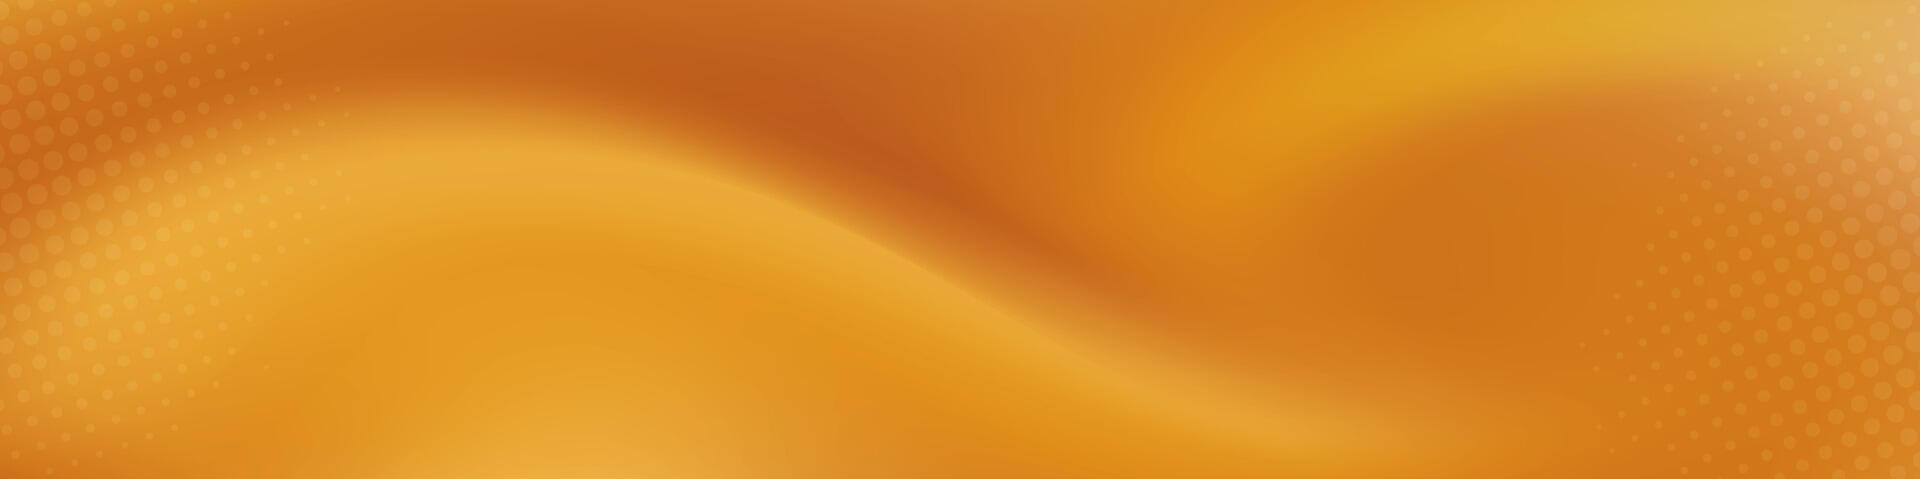 lutning suddig bakgrund i nyanser av gul och orange. idealisk för webb banderoller, social media inlägg, eller några design projekt den där kräver en lugnande bakgrund vektor